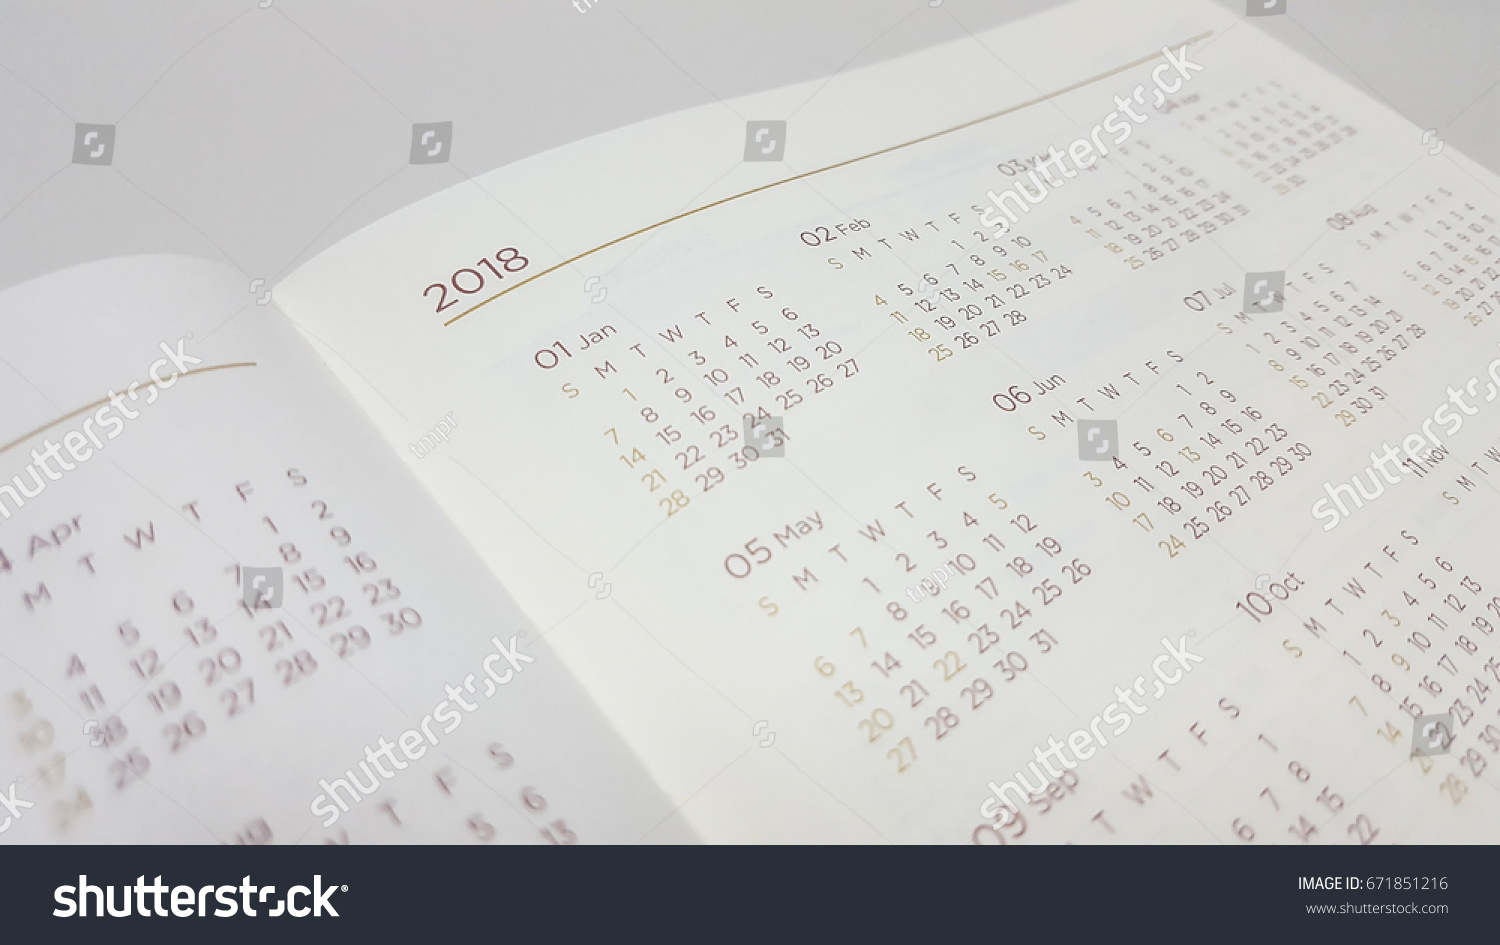 2018 calendar in schedule book #671851216